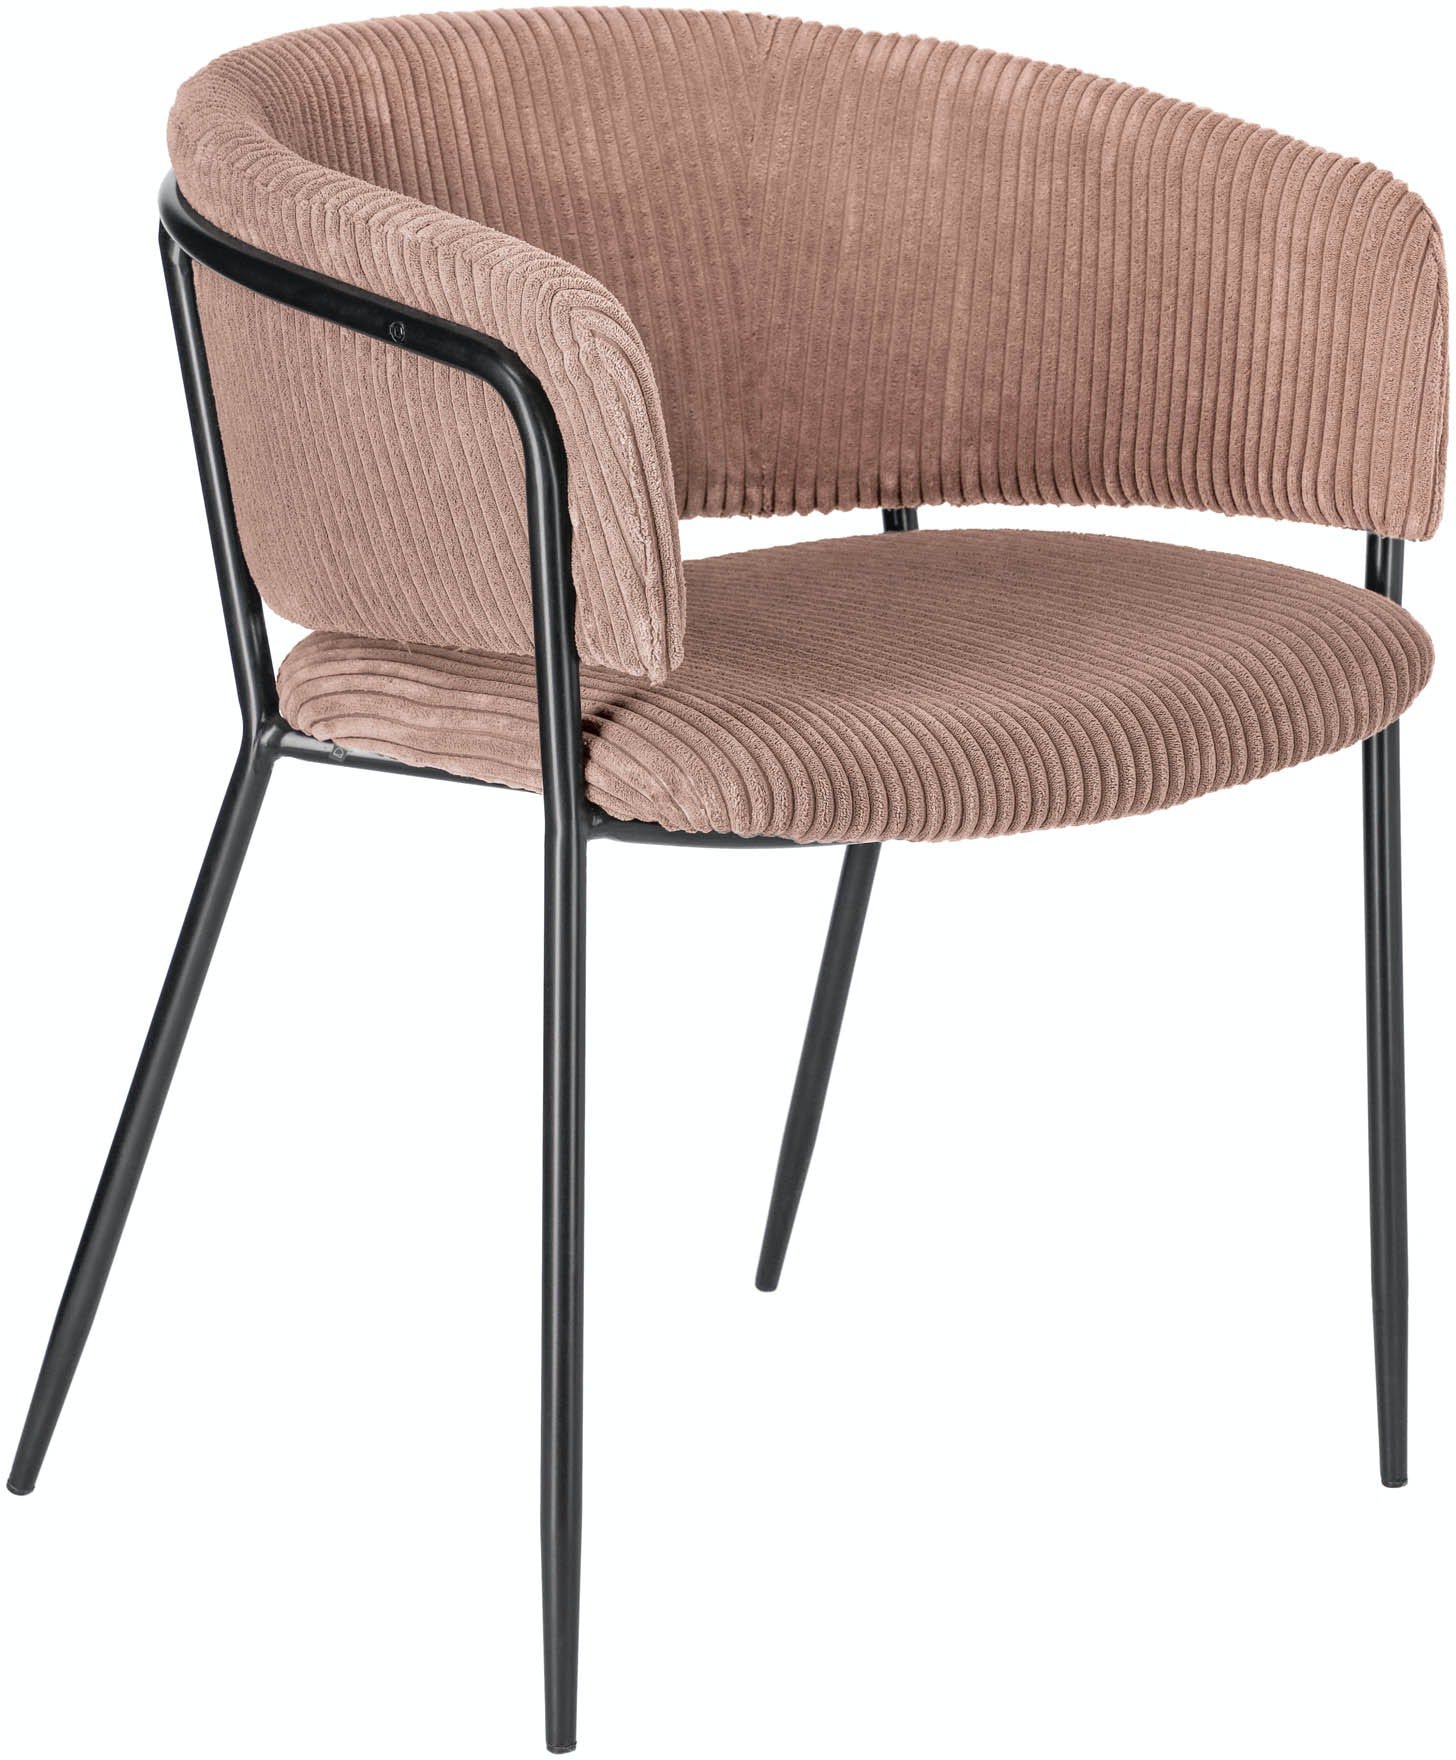 LAFORMA Runnie stol lavet af lyserød bred søm fløjlsbukser med stålben i sort finish